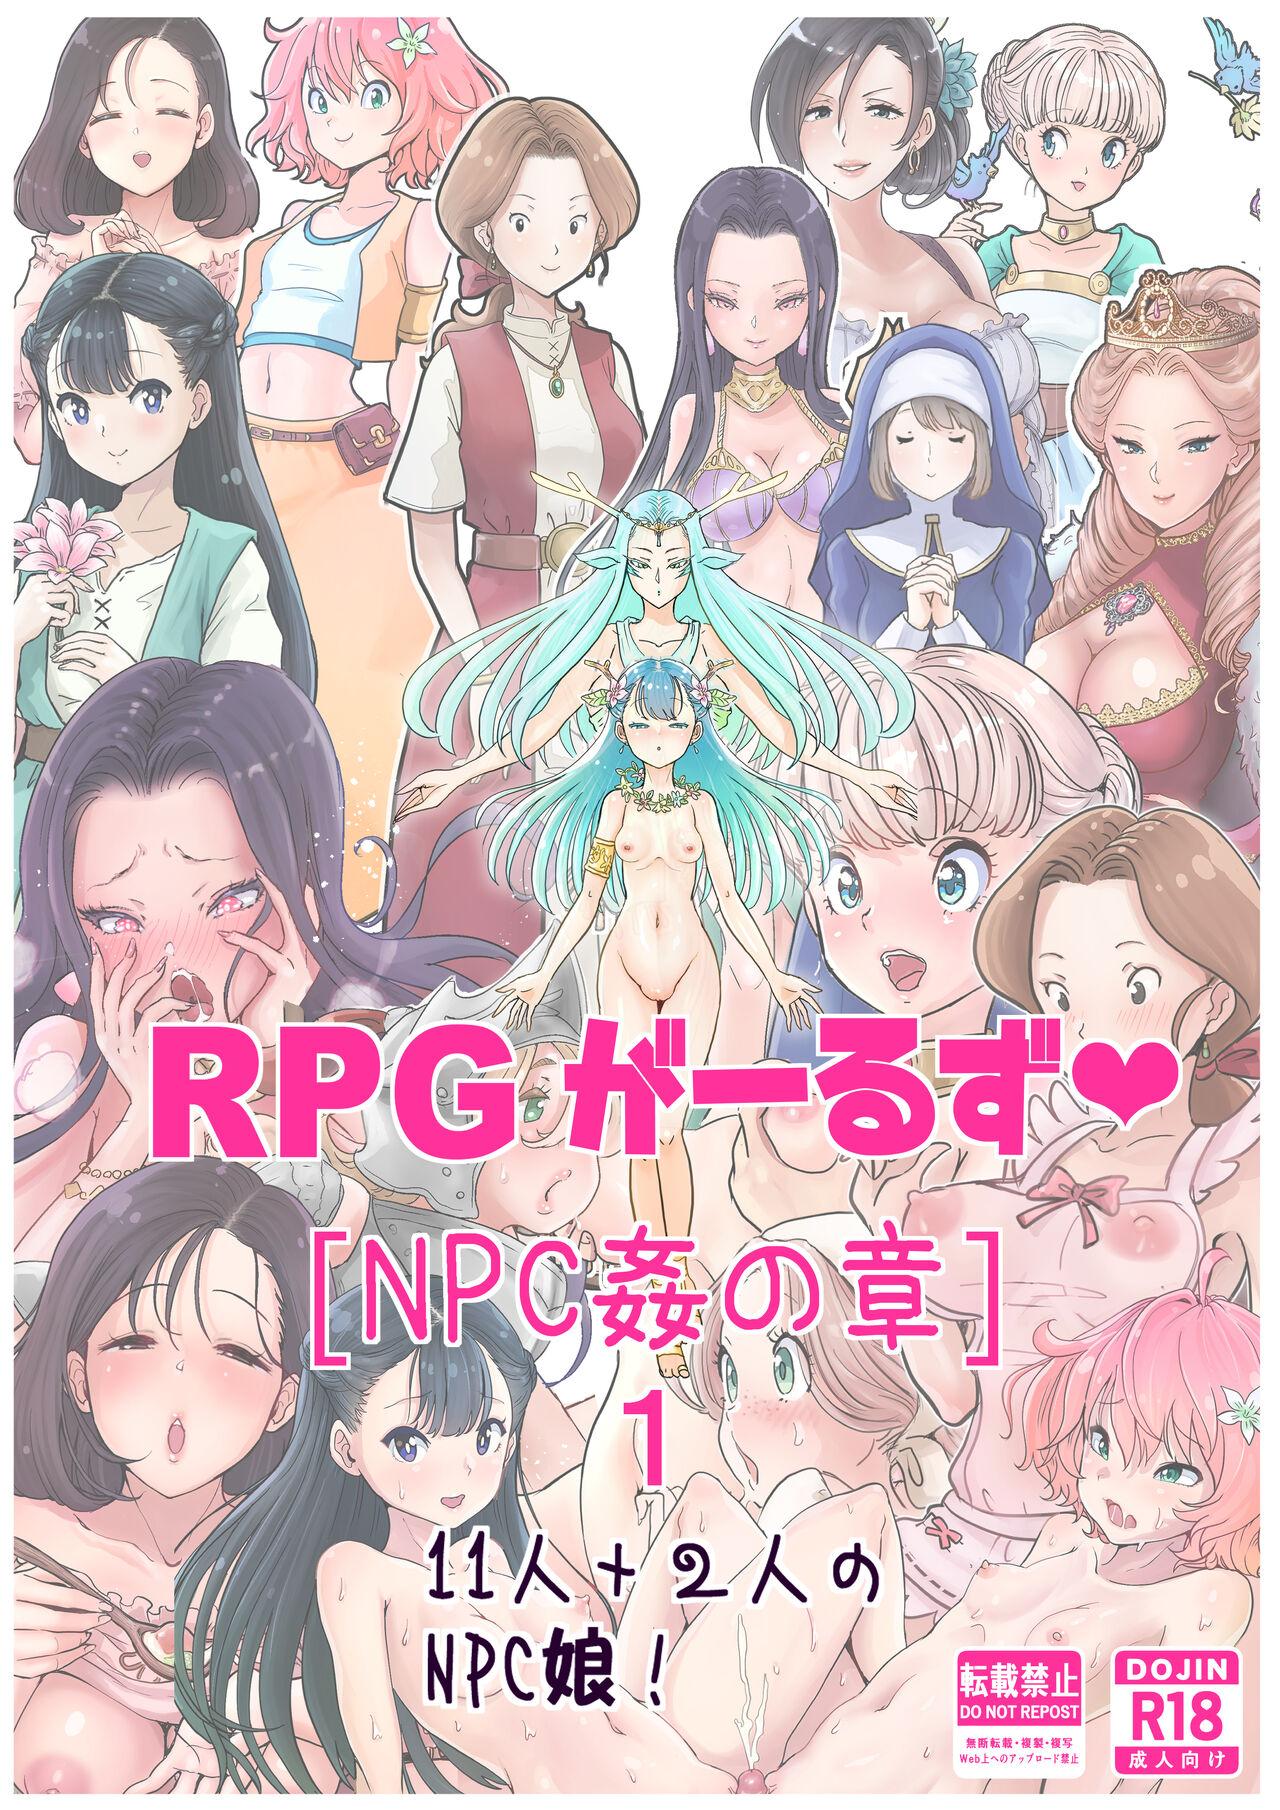 [tsubame] RPG girls ❤︎ [NPC kan no shou] 1 1